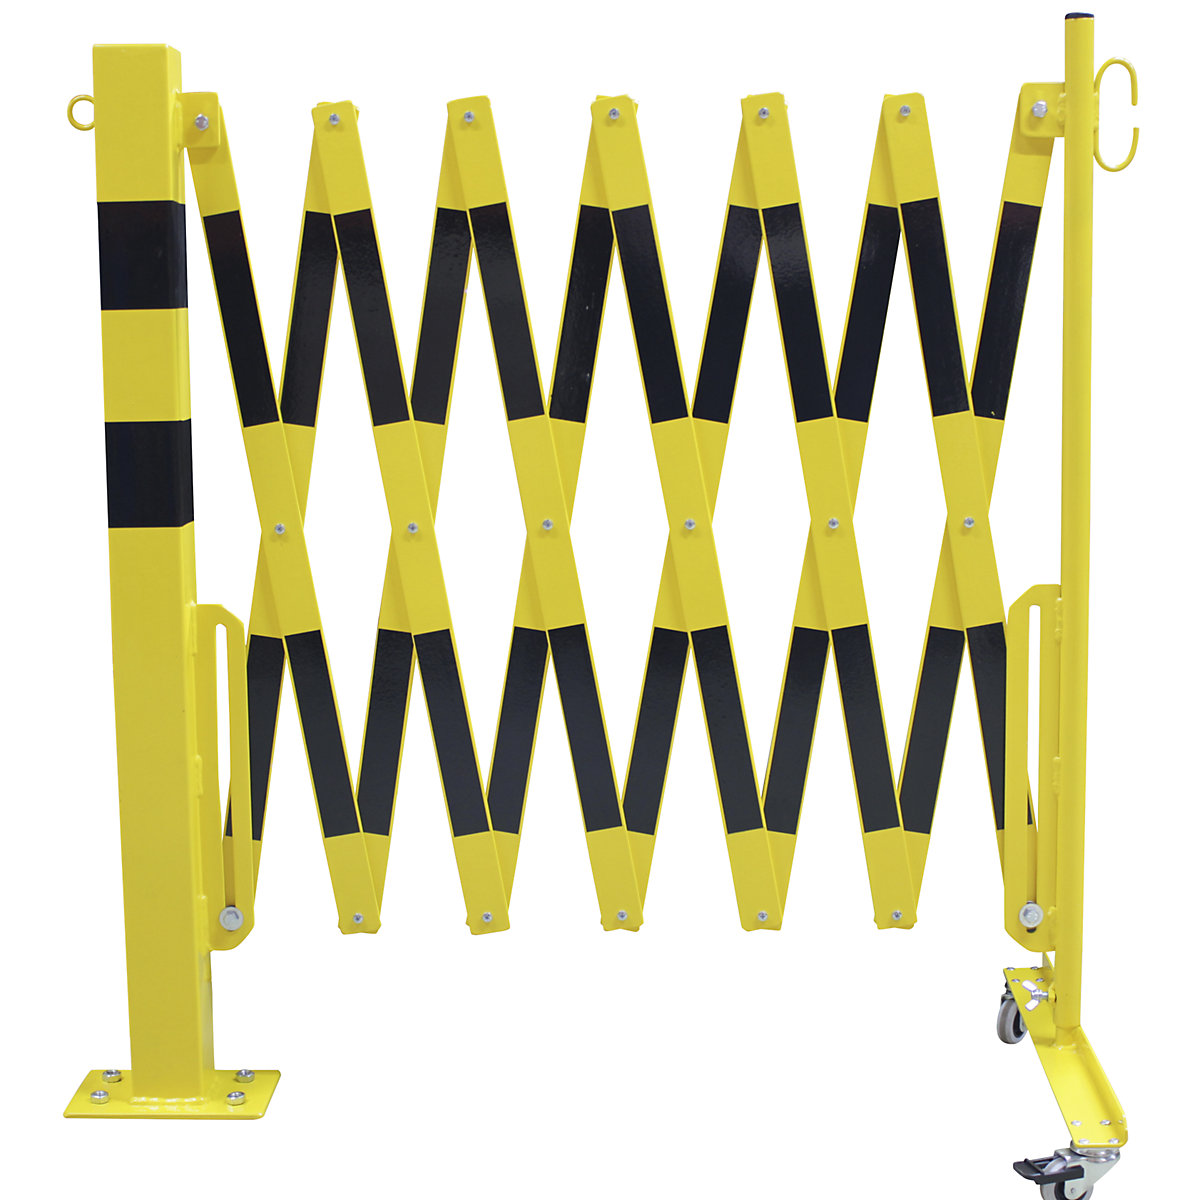 Stâlp de blocare cu grilaj de îngrădire tip foarfece, țeavă rectangulară 70 x 70 mm, pentru fixare cu dibluri, galben / negru, lungime max. 4000 mm